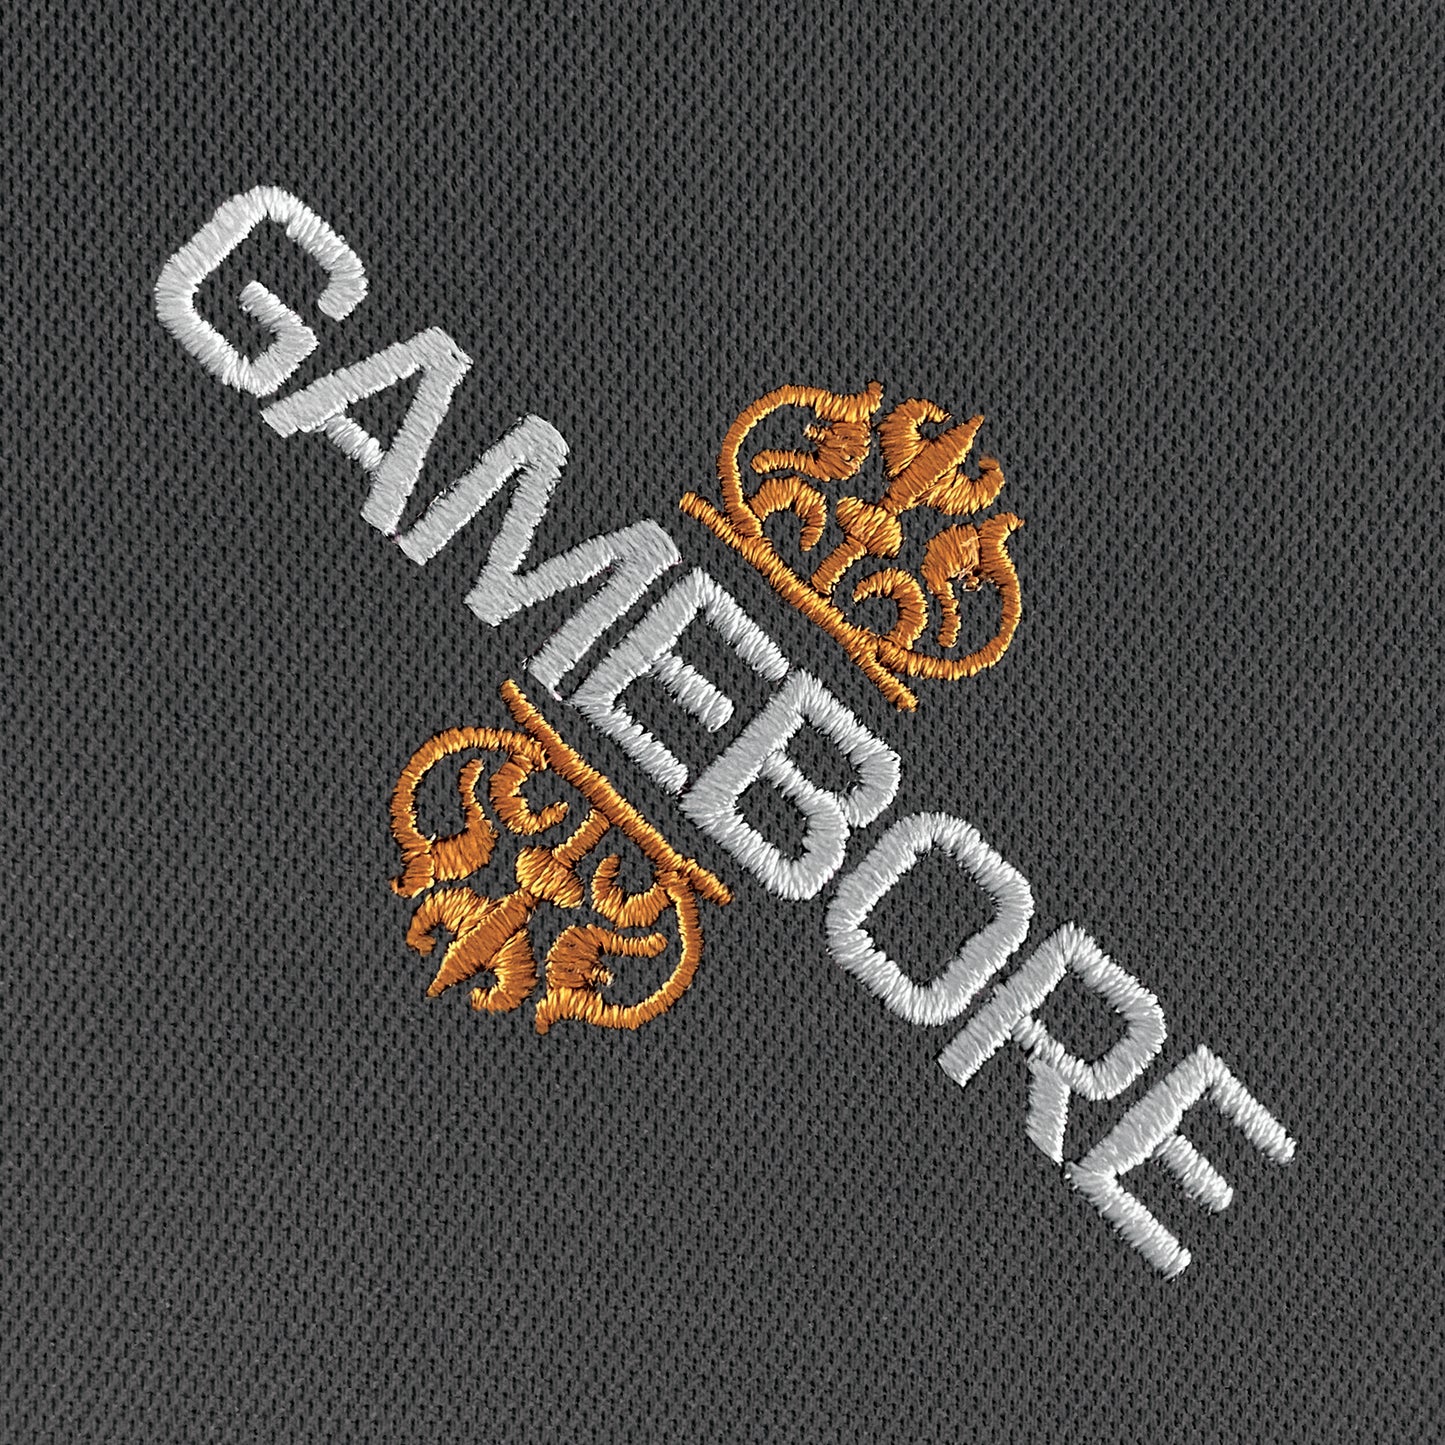 Gamebore Polo Shirt (Grey)